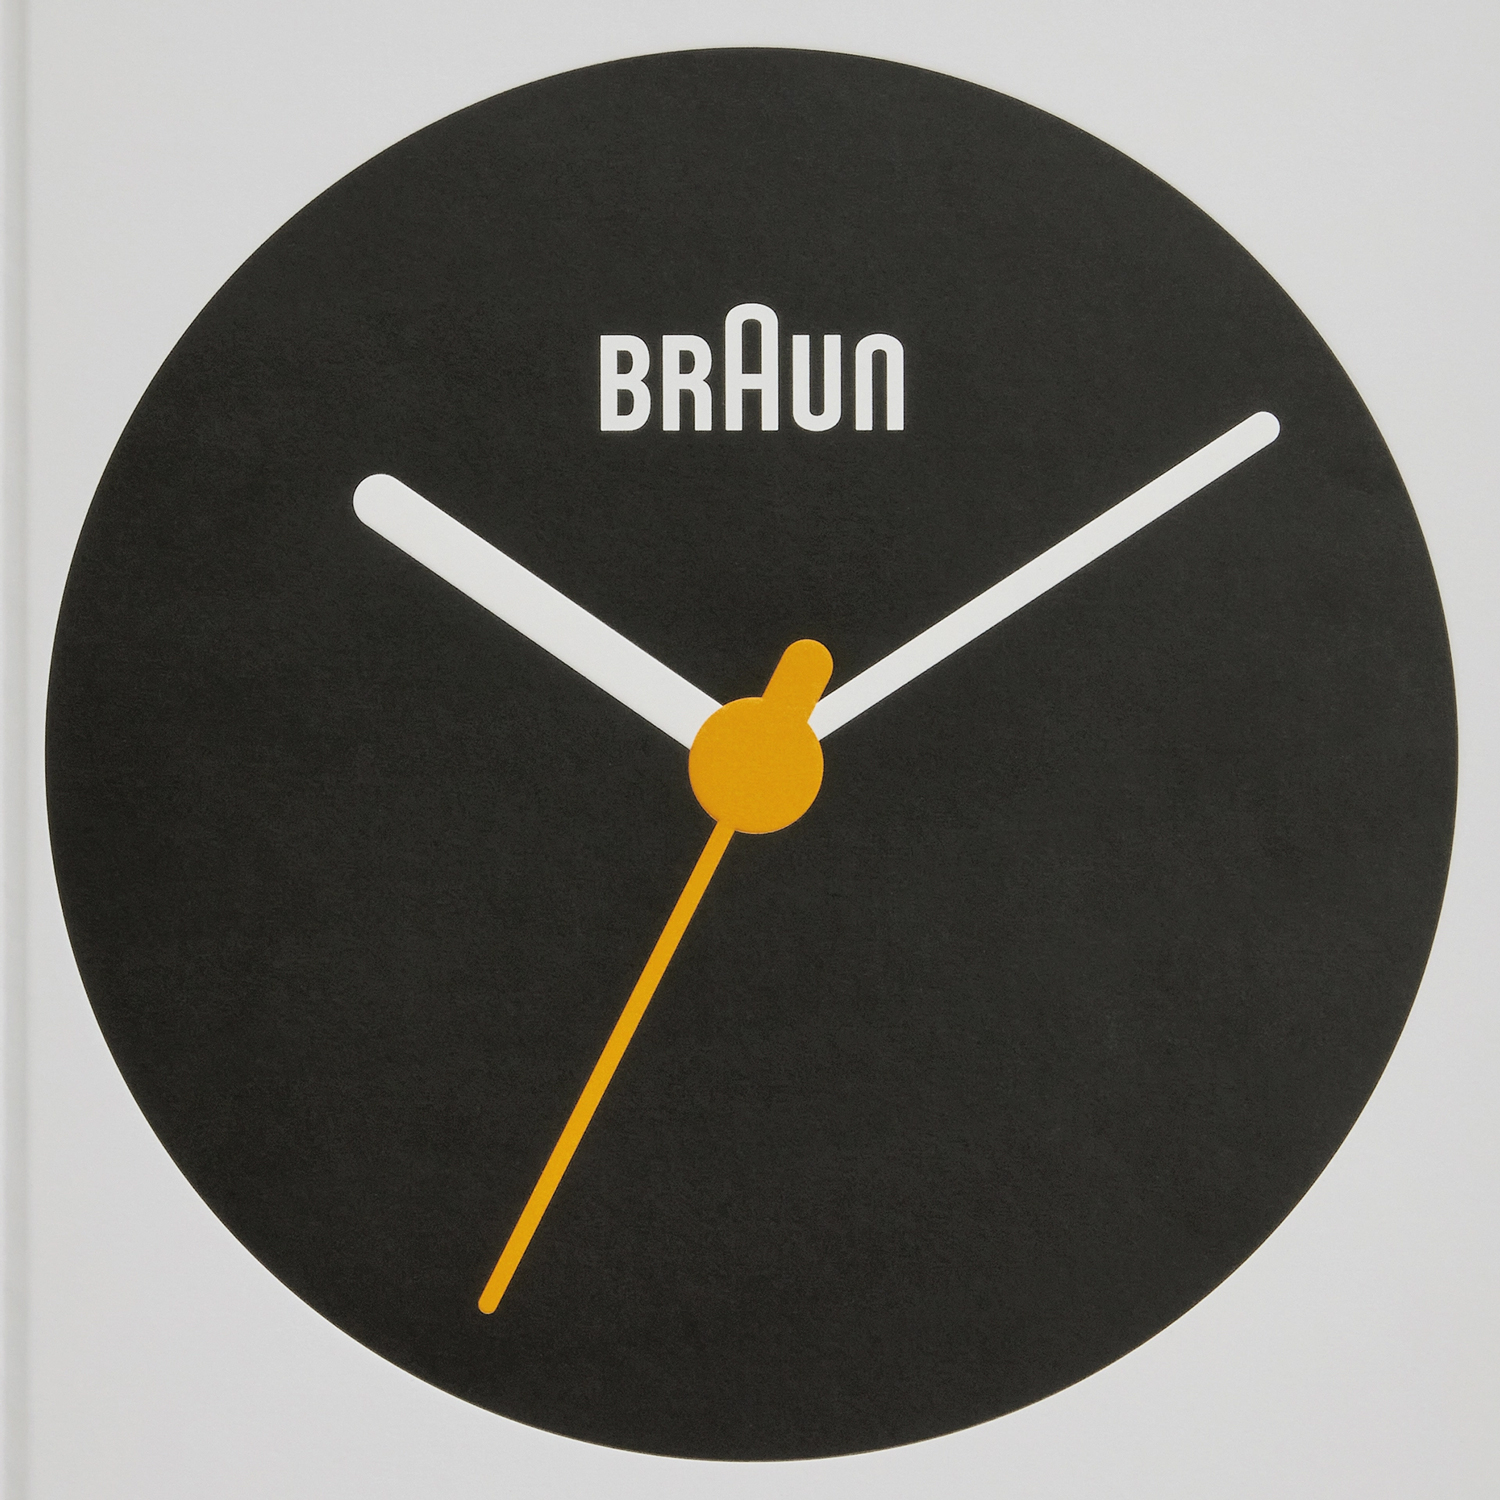 εικόνα του Braun: Σχεδιασμένο για να διαρκέσει